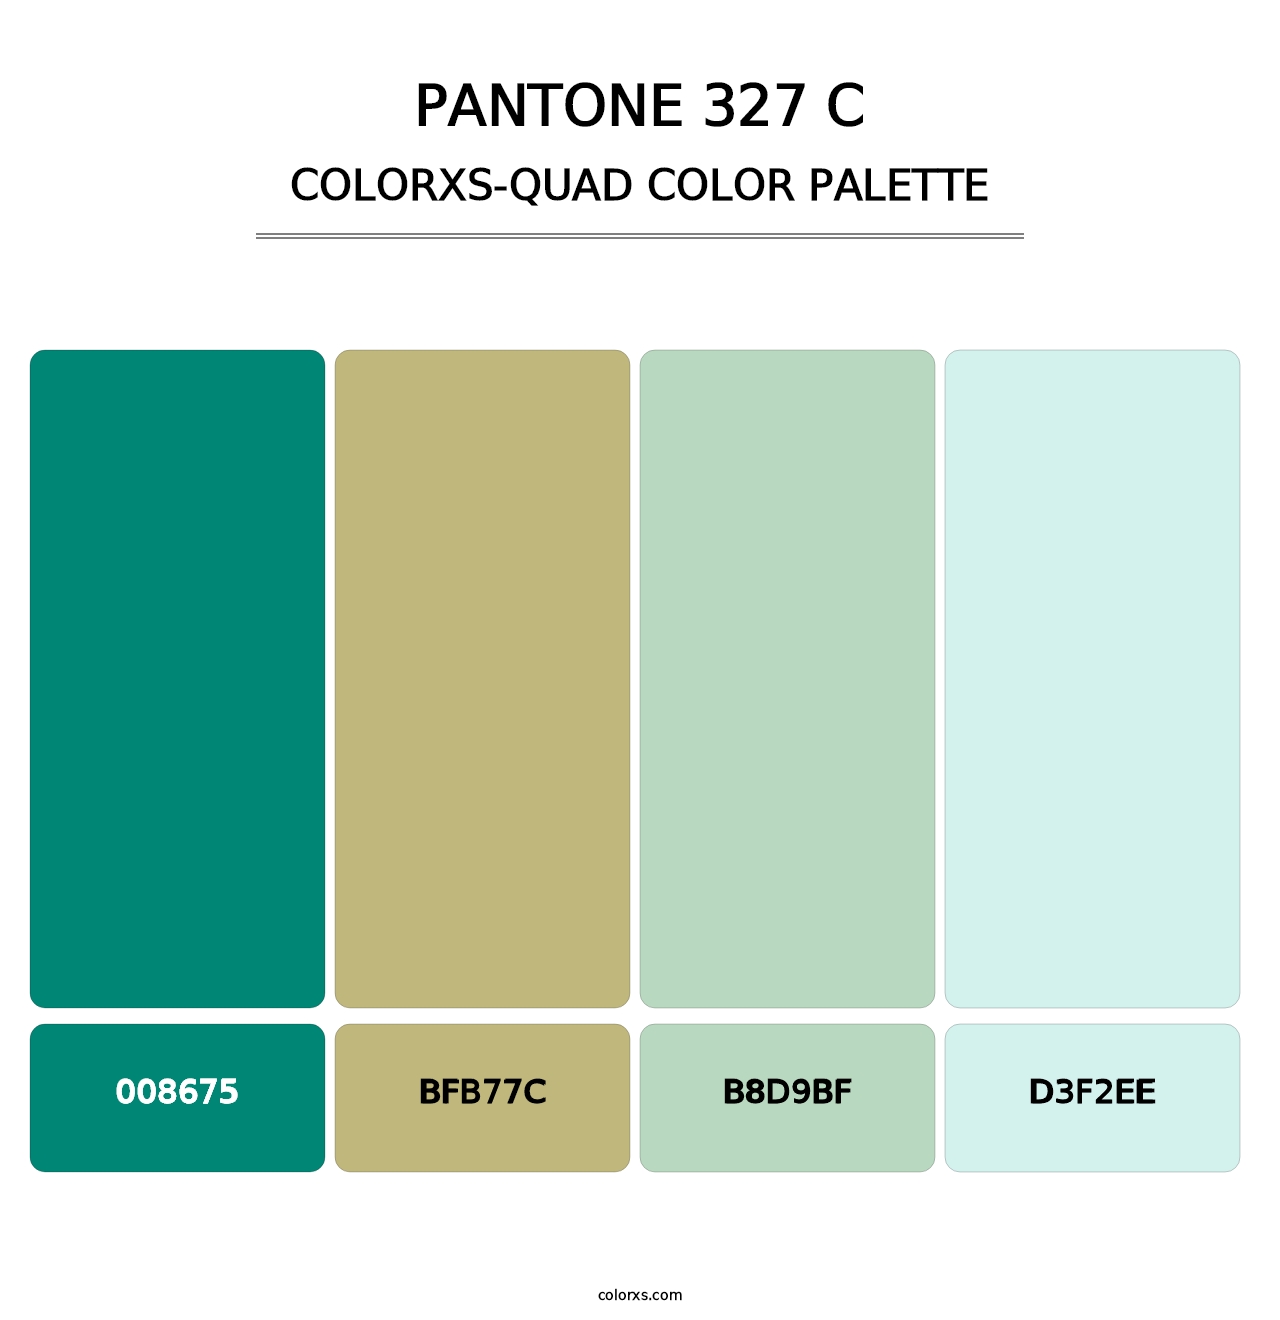 PANTONE 327 C - Colorxs Quad Palette